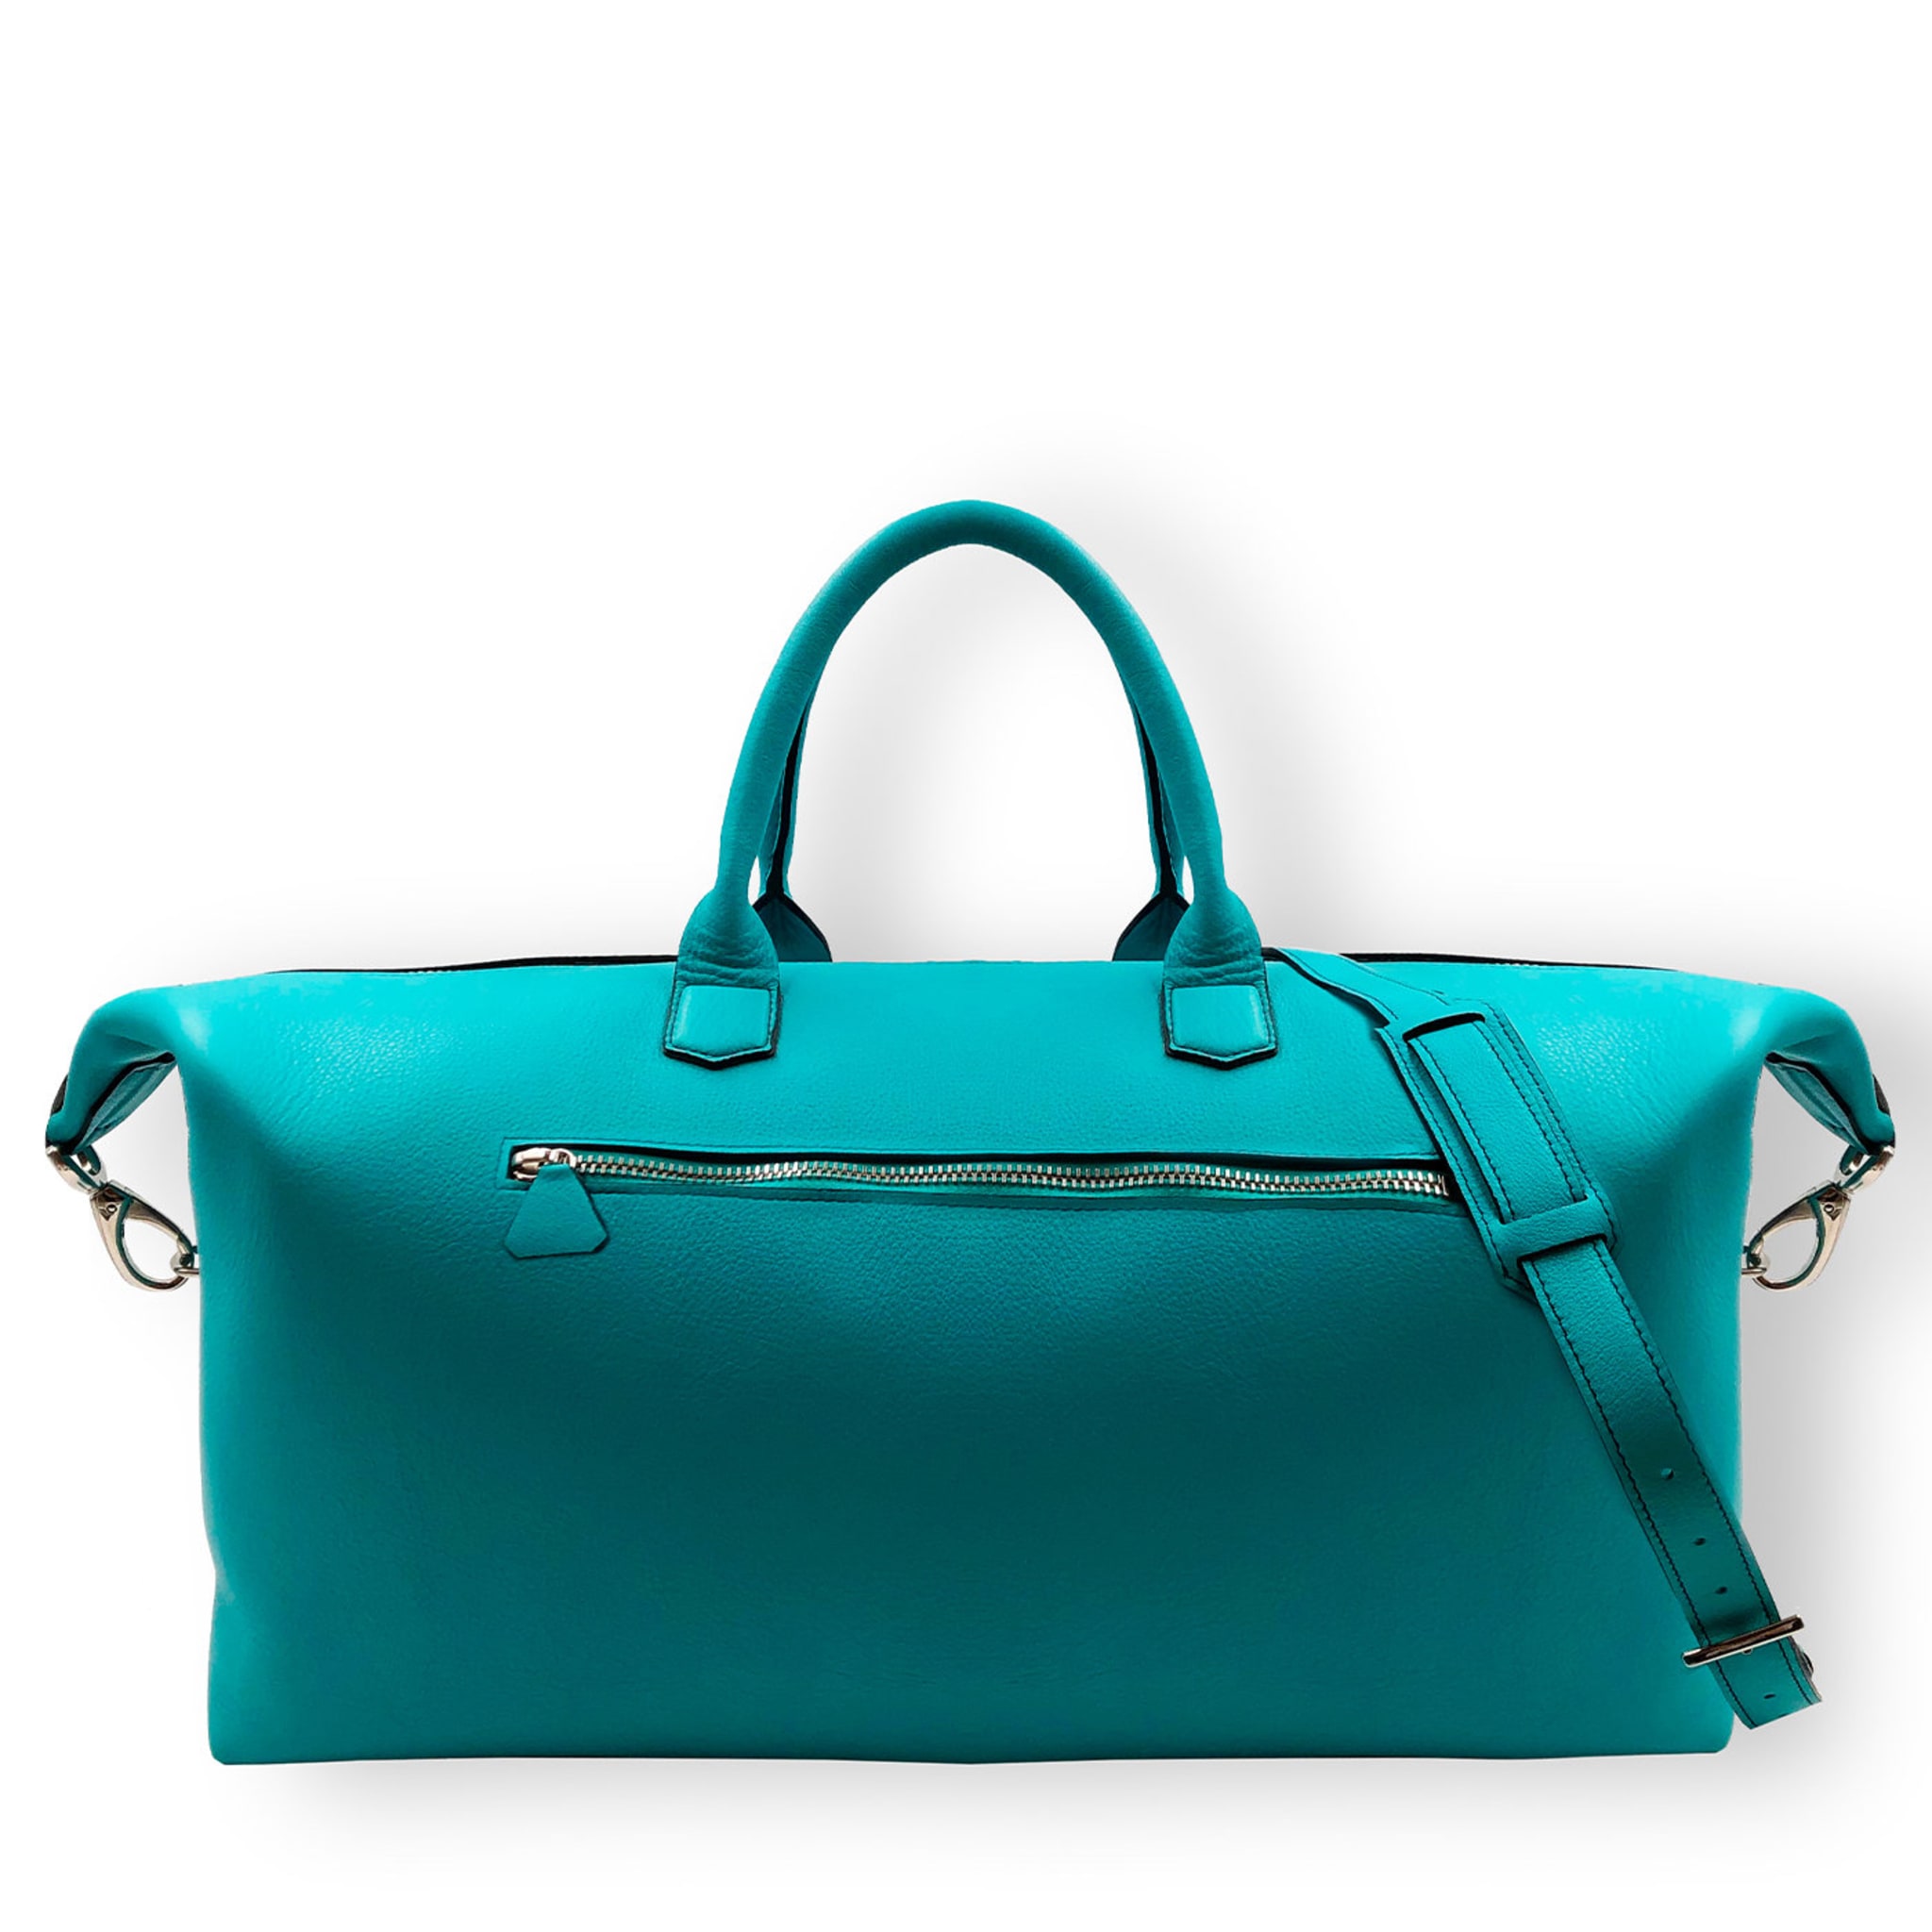 Turquoise Weekender Bag - Alternative view 2